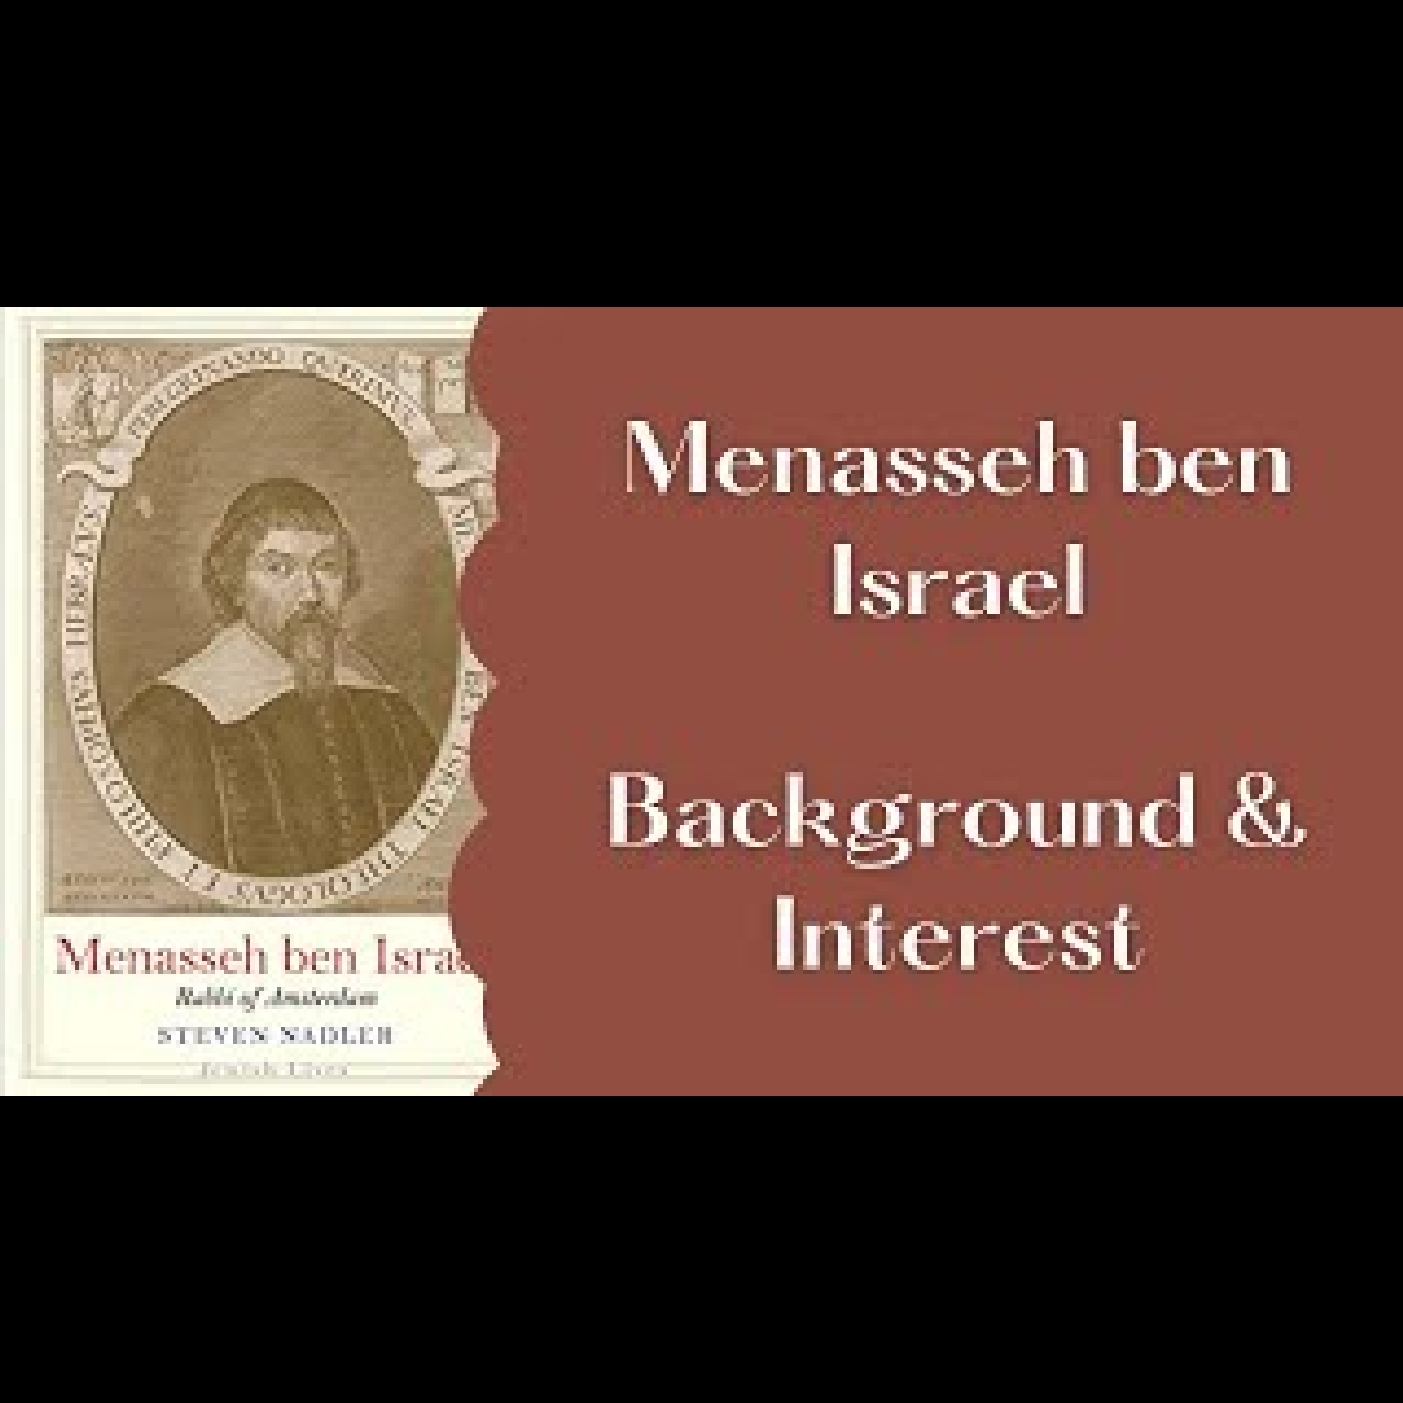 Menasseh ben Israel - Interview - Professor Steven Nadler - Intro